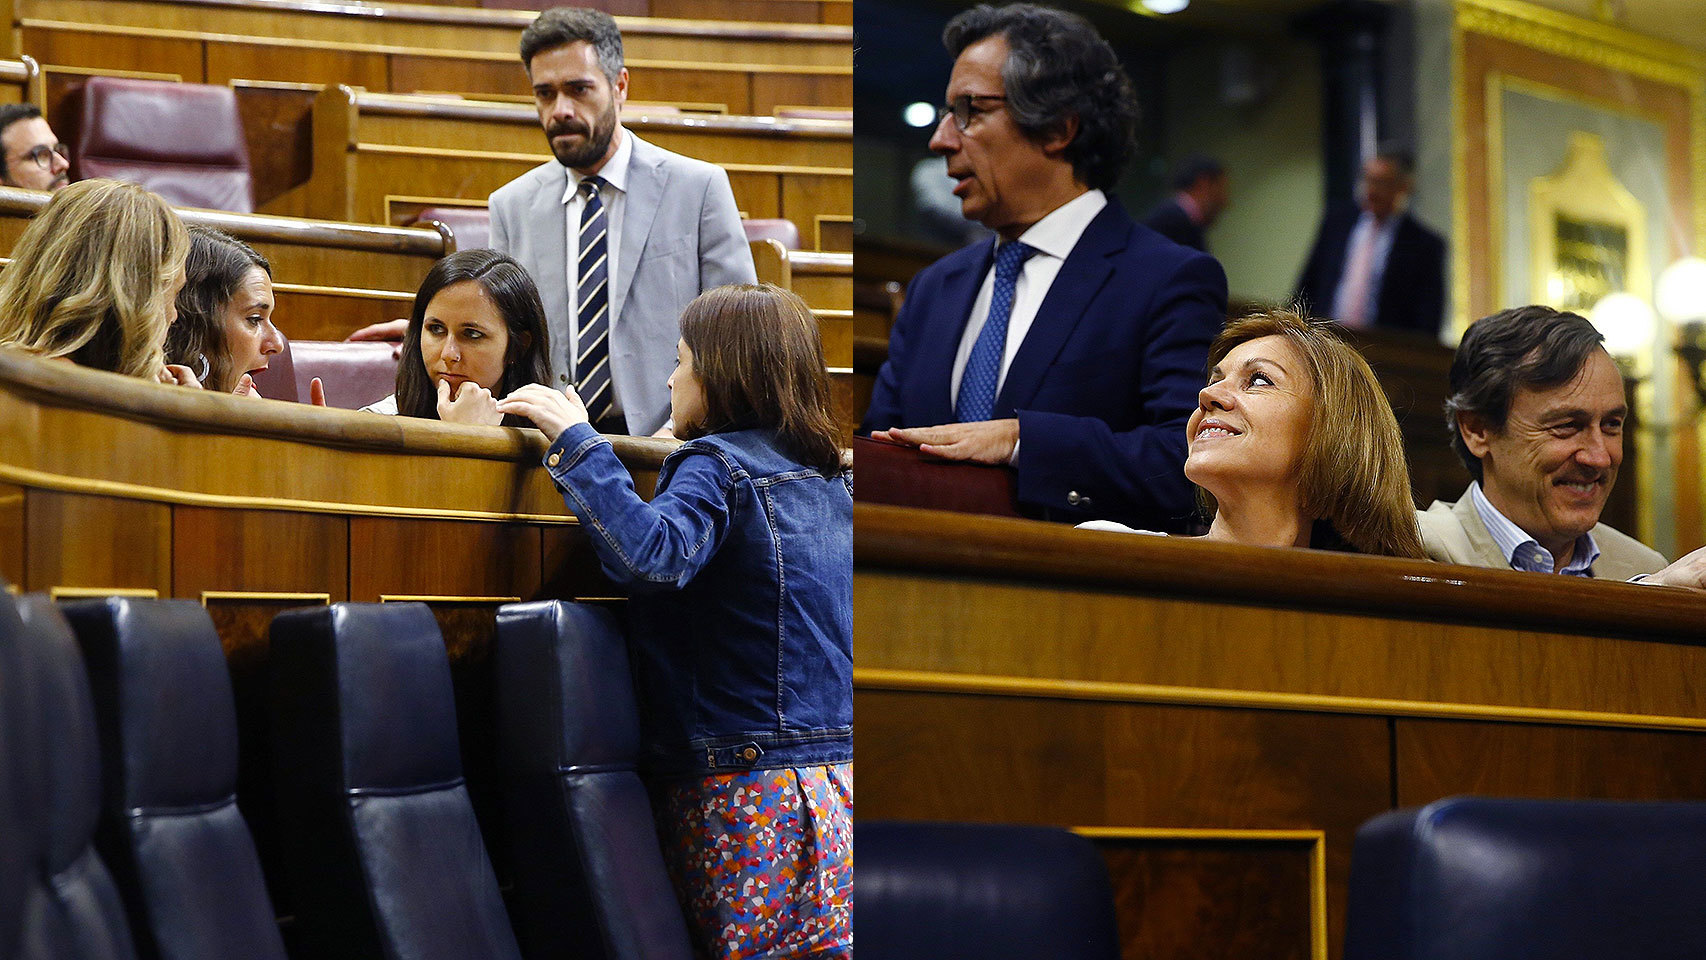 A la izquierda, Adriana Lastra charla preocupada con las diputadas de Podemos Ione Belarra y Noelia Vera. A la derecha, Cospedal y Hernando sonríen tras el fracaso de la renovación de RTVE.